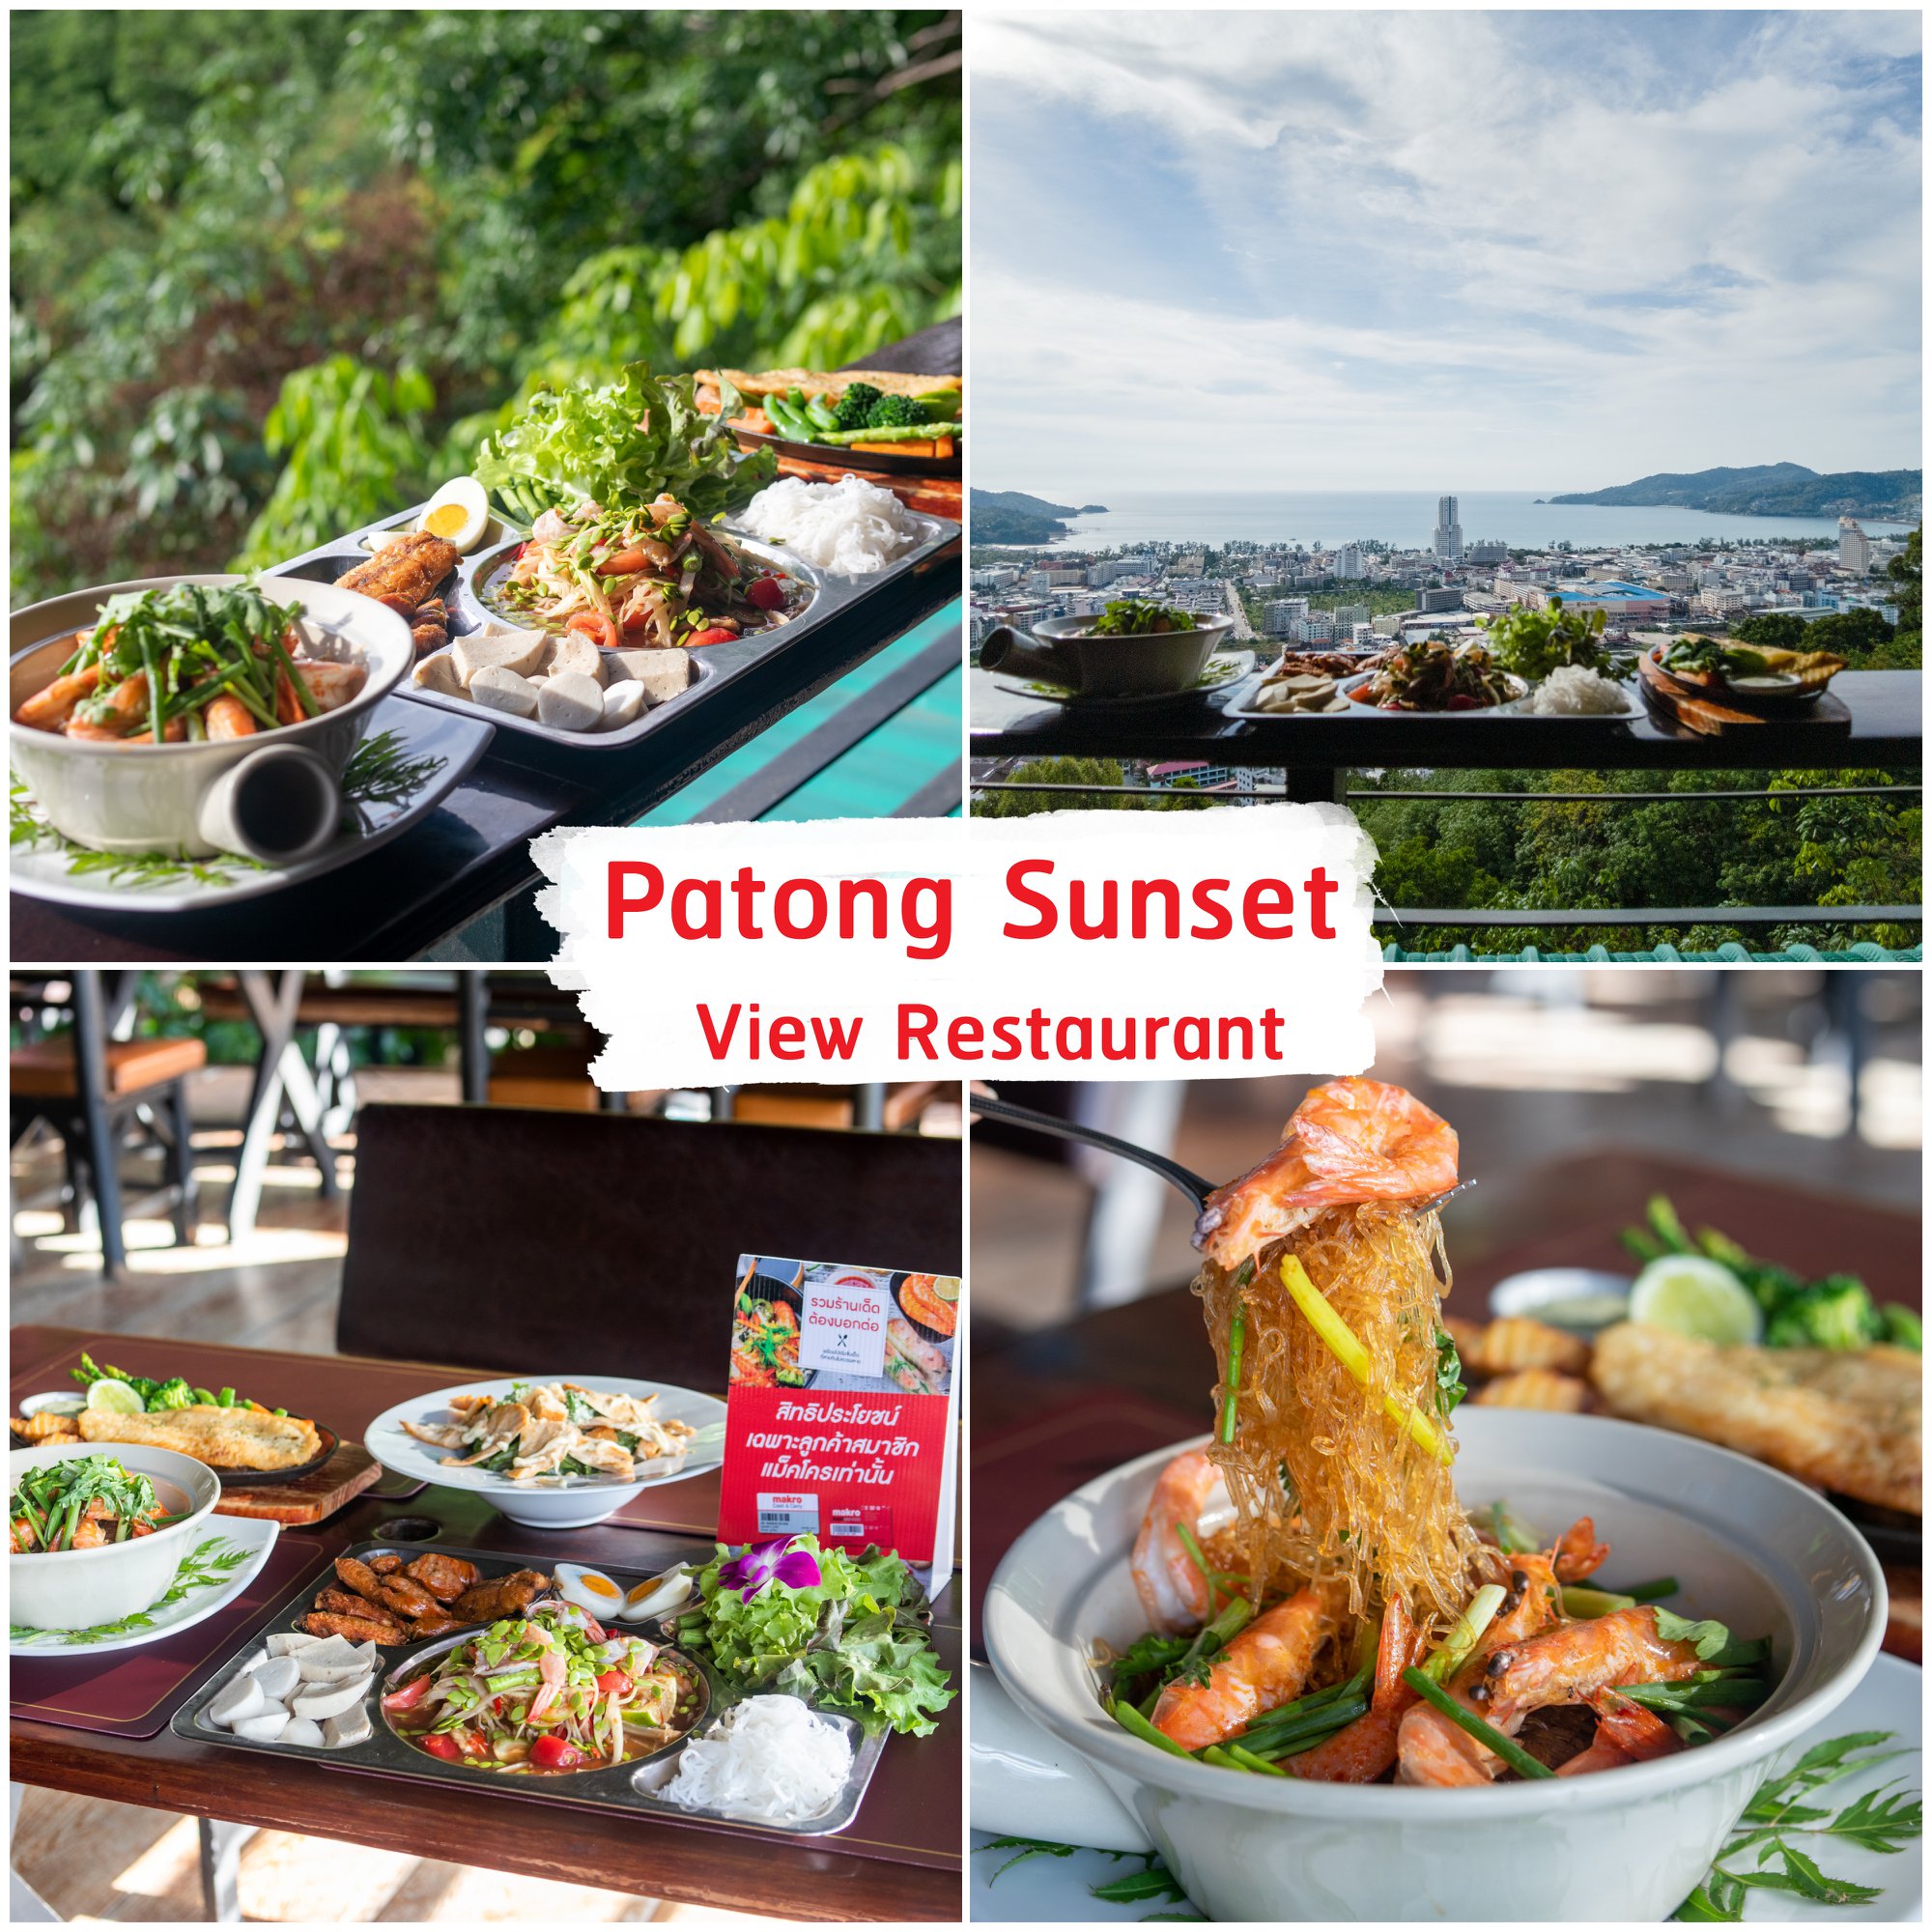 Patong-Sunset-View-Restaurant -ที่สุดแห่งวิวพระอาทิตย์ตกแห่งป่าตอง-บอกเลยว่าสวยมากก-แถมอาหารอร่อยด้วยน้าา-จุดเด่นคือร้านอยู่บนเขา-บรรยากาศดี-มีทั้งโซนห้องแอร์
และโซนวิว-ส่วนใหญ่นั่งกันโซนวิวหมดครับ-บอกเลยว่าฟินมากก ภูเก็ต,ร้านอาหารภูเก็ต,ร้านอร่อยภูเก็ต